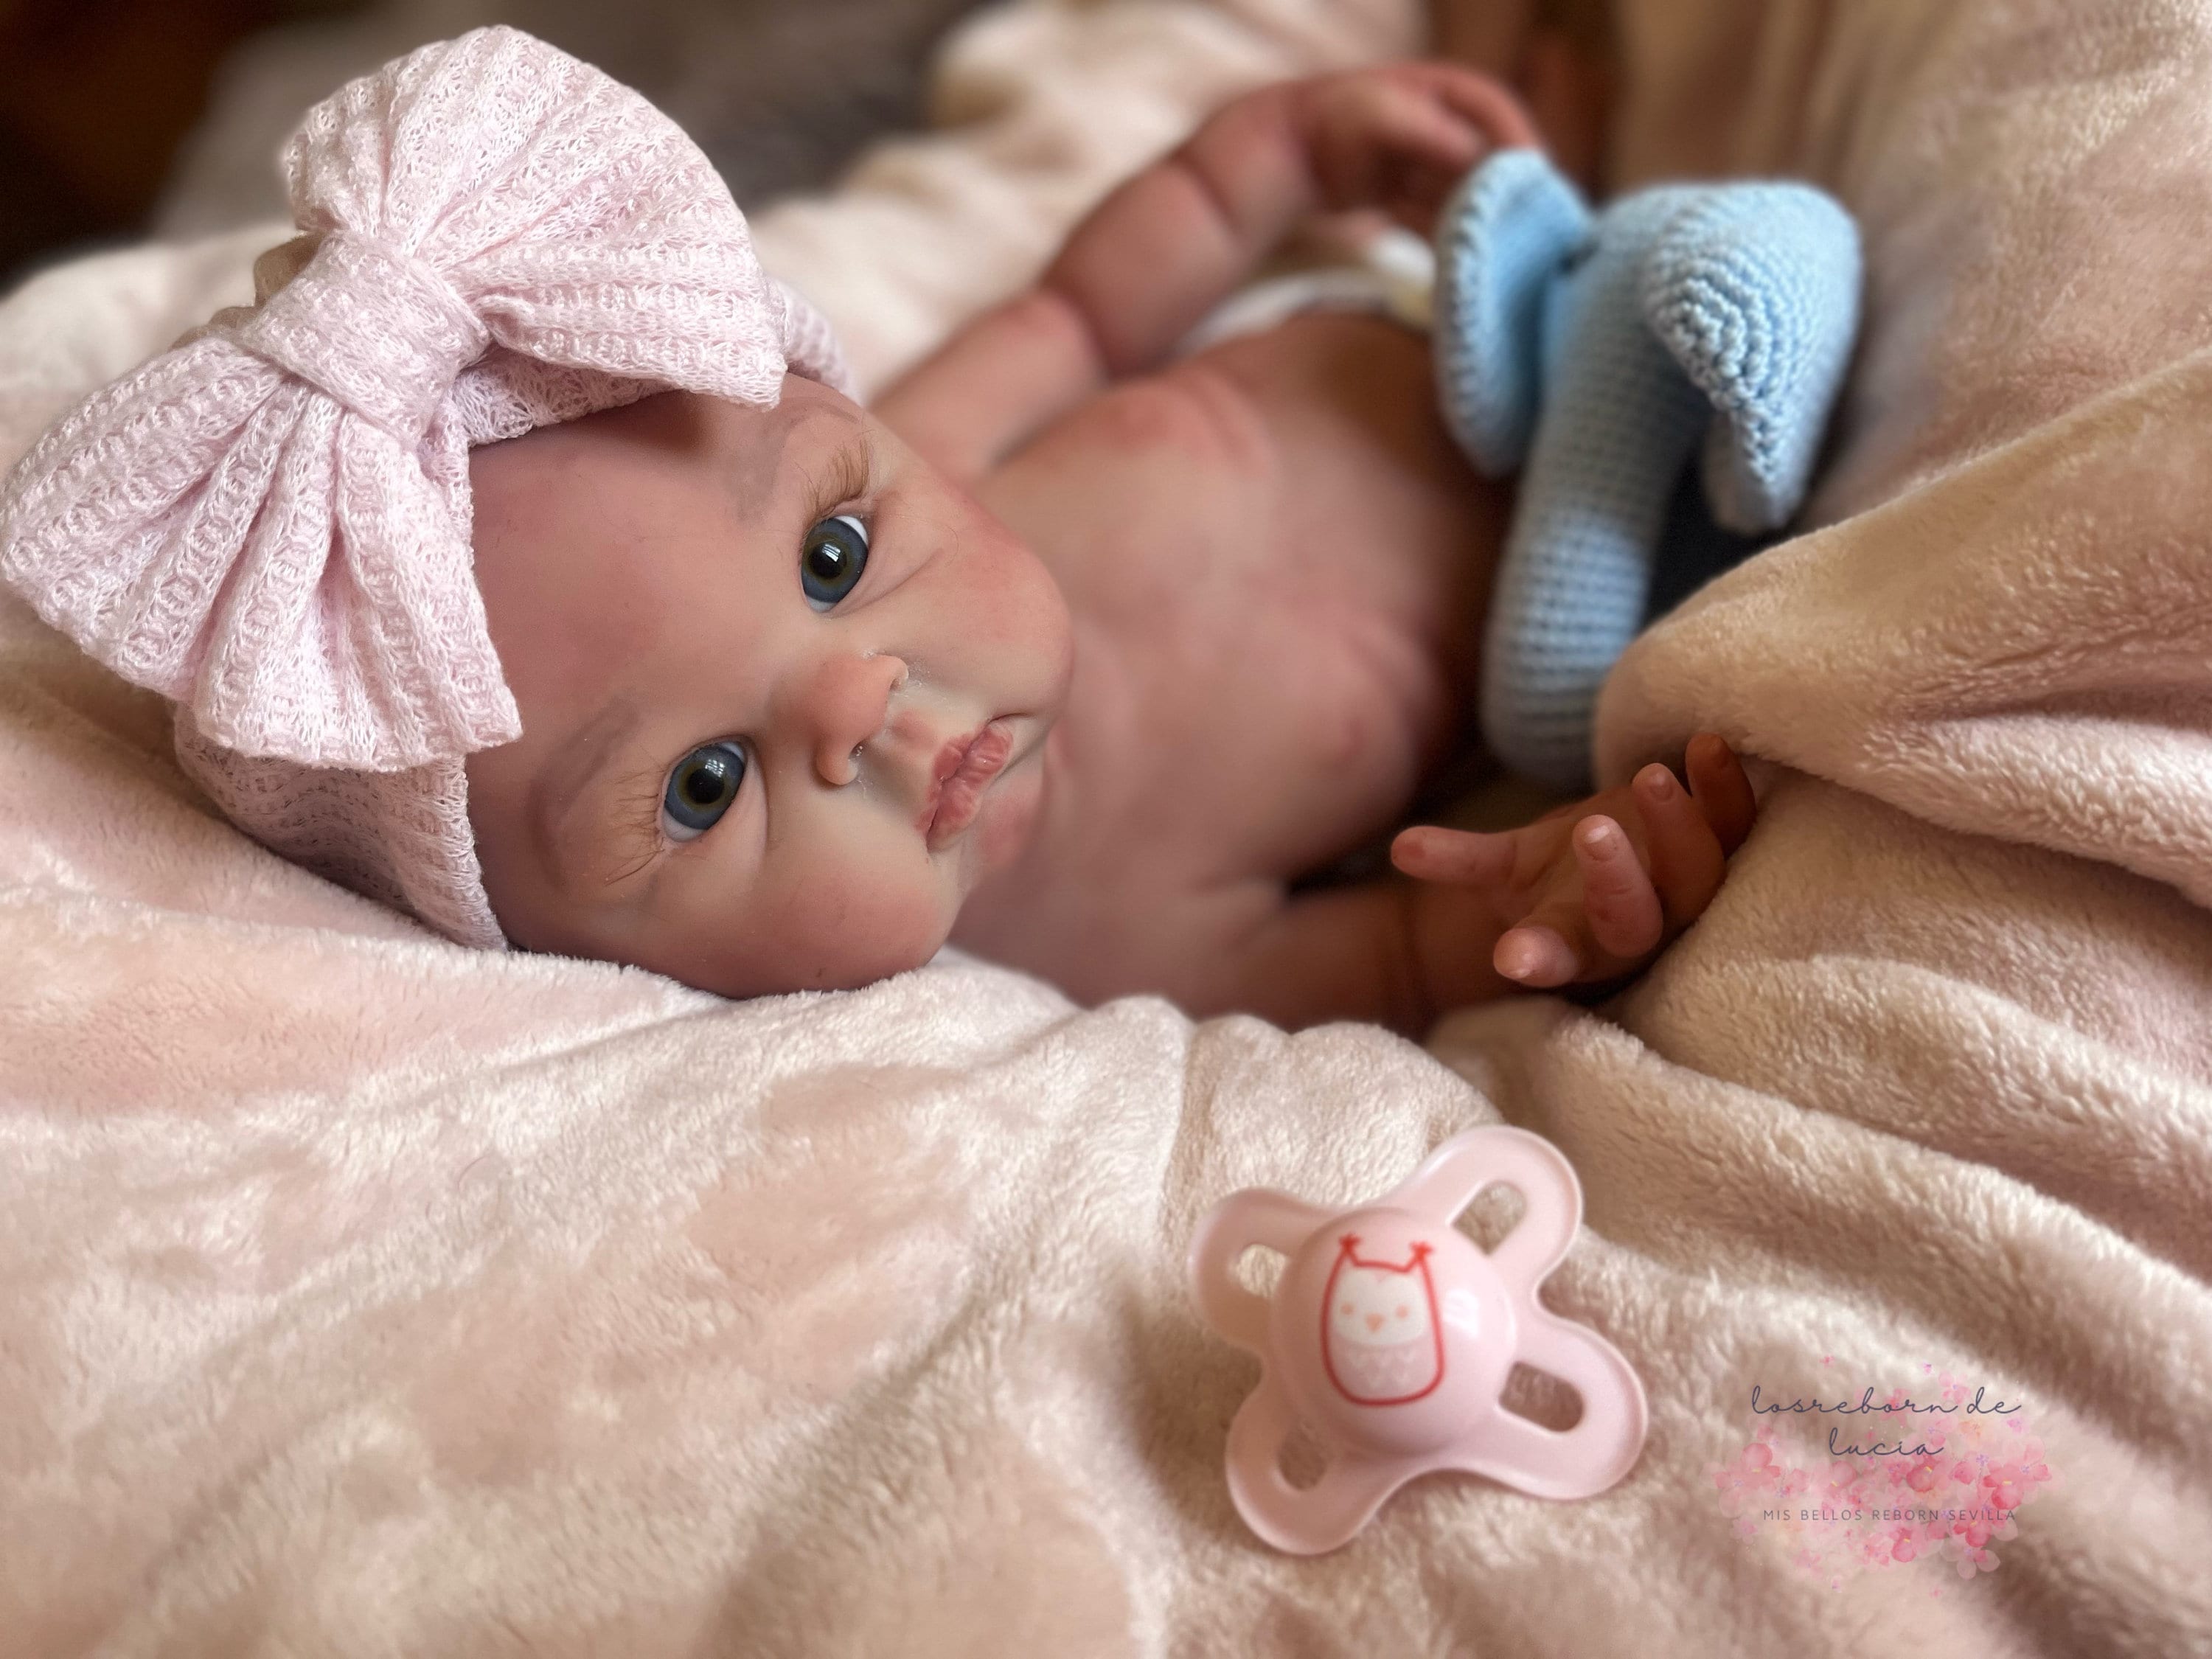 Muñeca De Bebé/Reborn Niña De Silicona Con Vestido De Cerdo Impermeable  Para Bañera 48 Cm